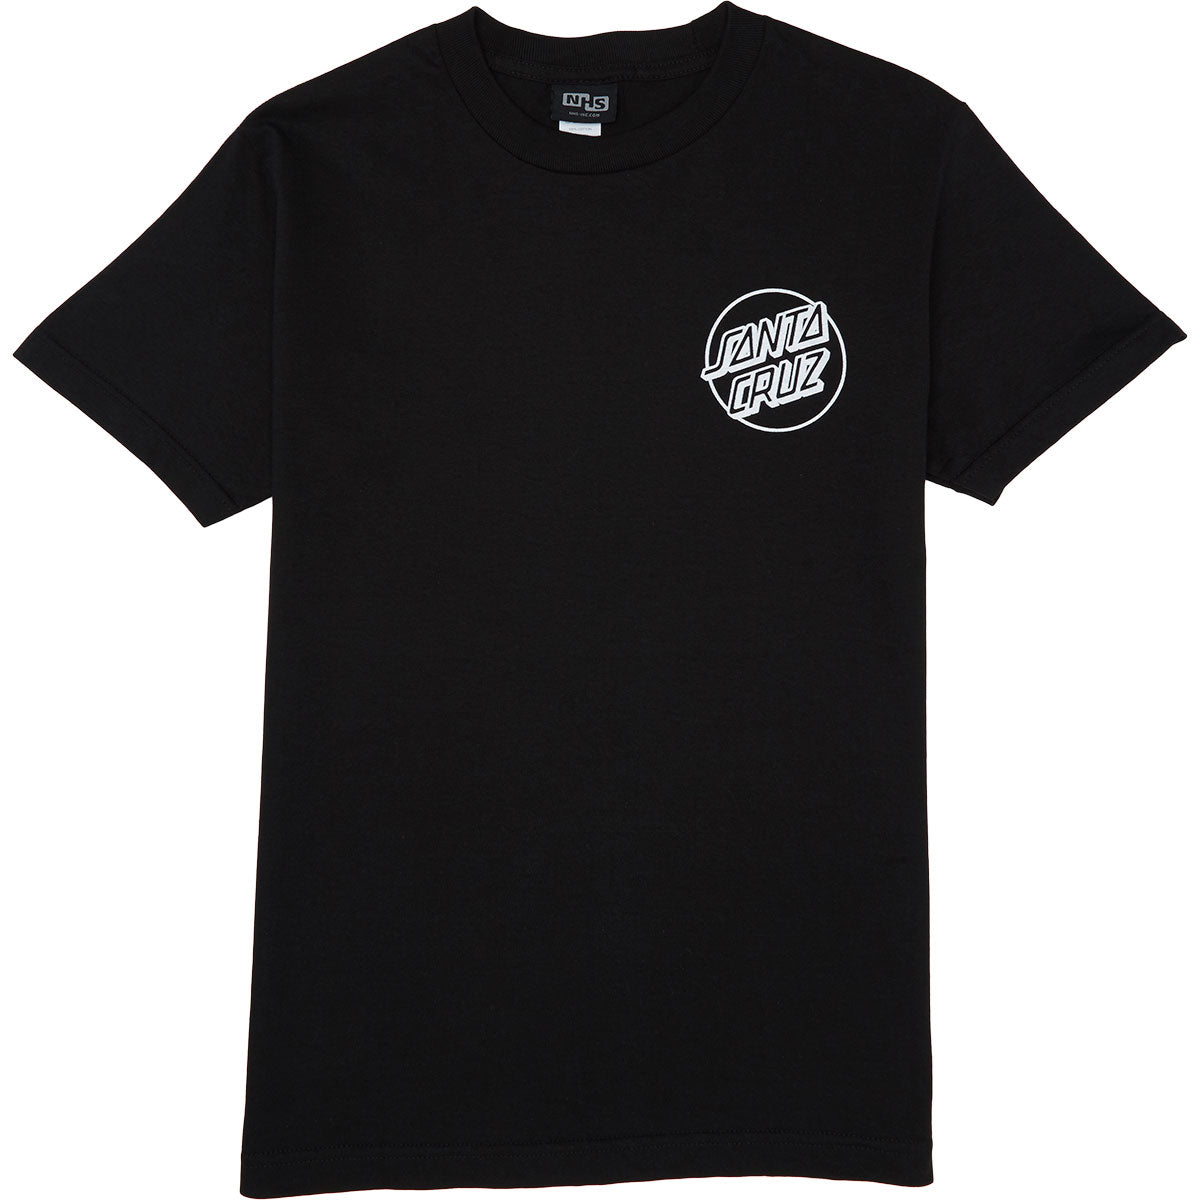 Santa Cruz Opus Dot T-Shirt - Black/White image 2